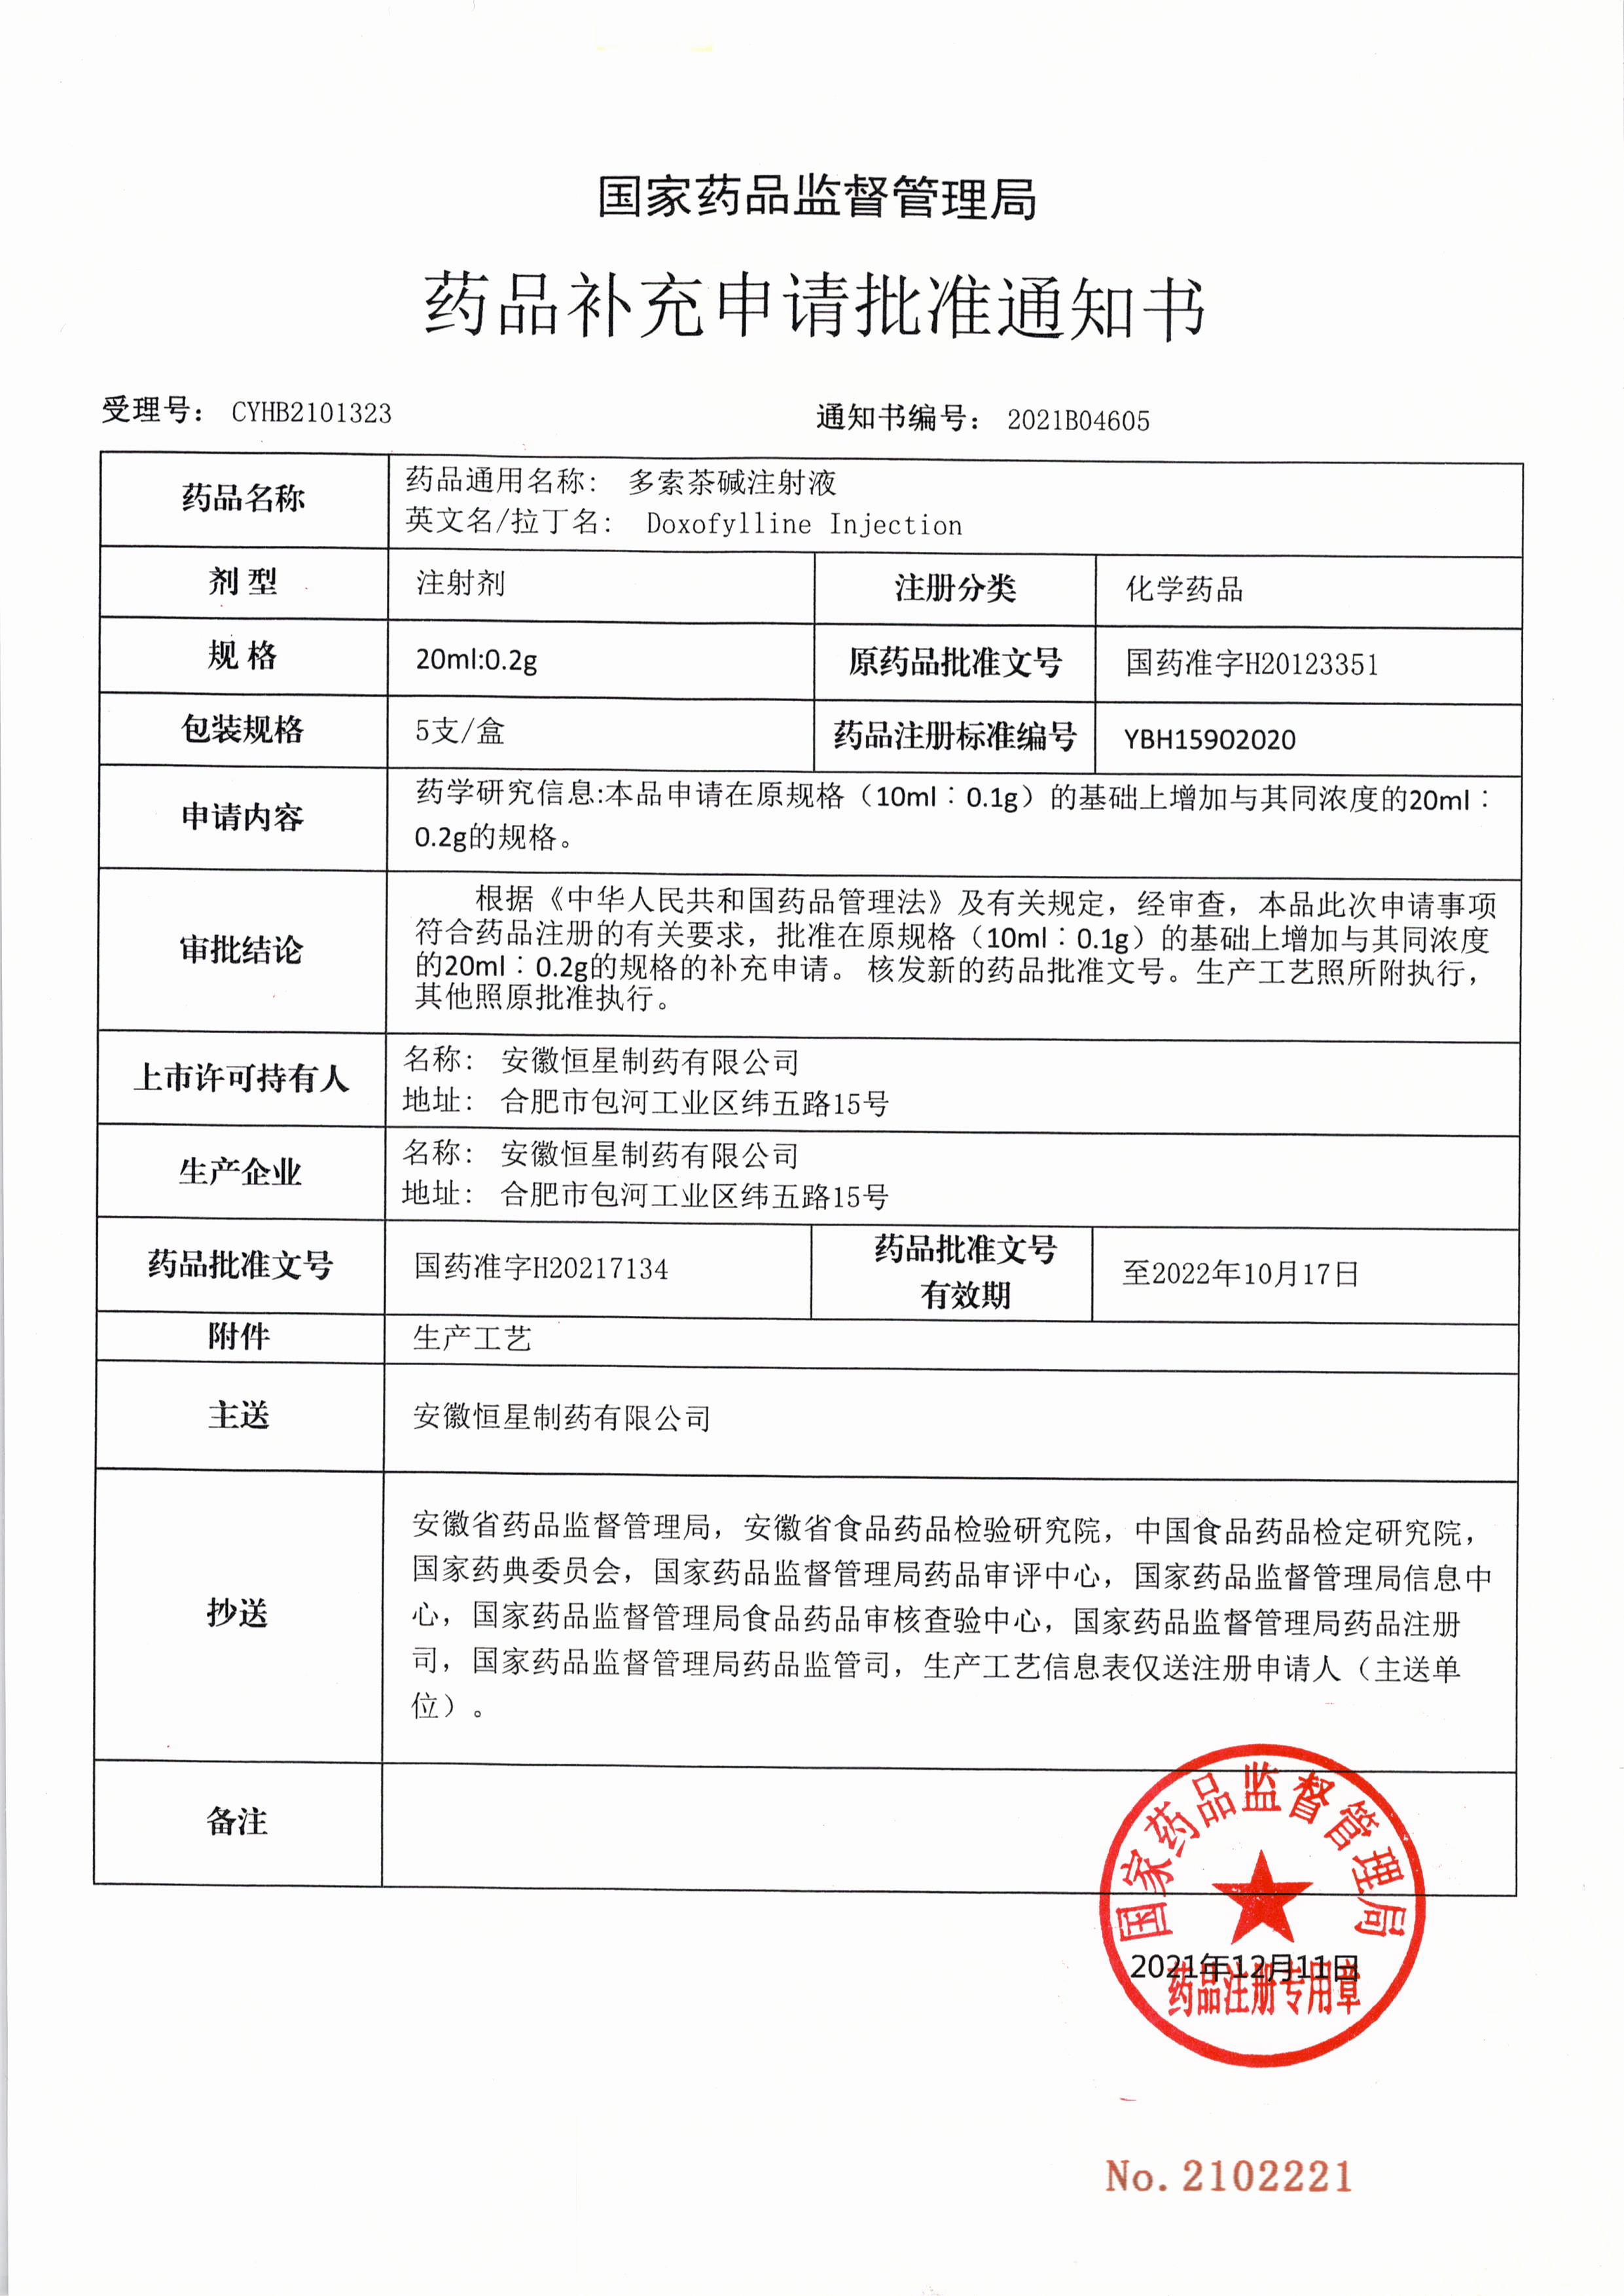 华仁药业全资子公司恒星制药多索茶碱注射液补充规格取得药品注册证书(图1)